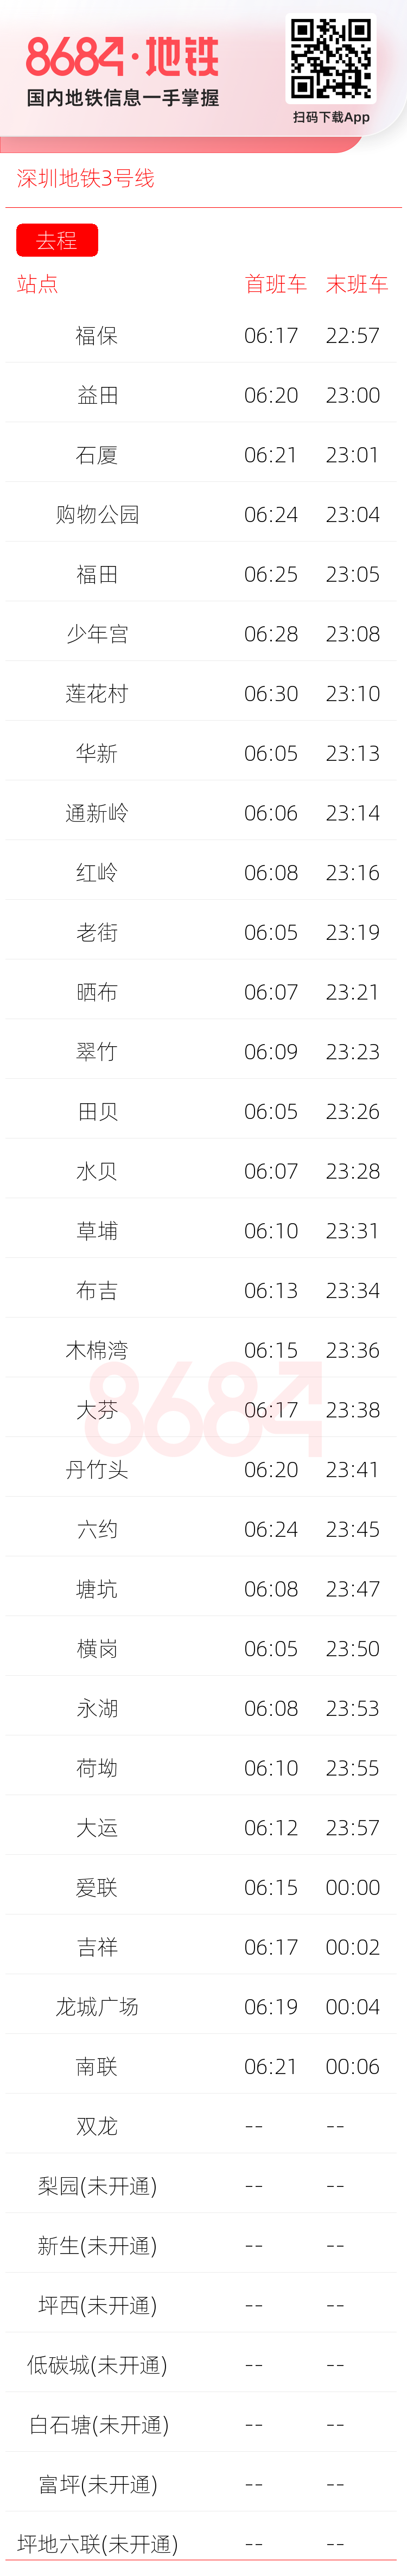 深圳地铁3号线运营时间表